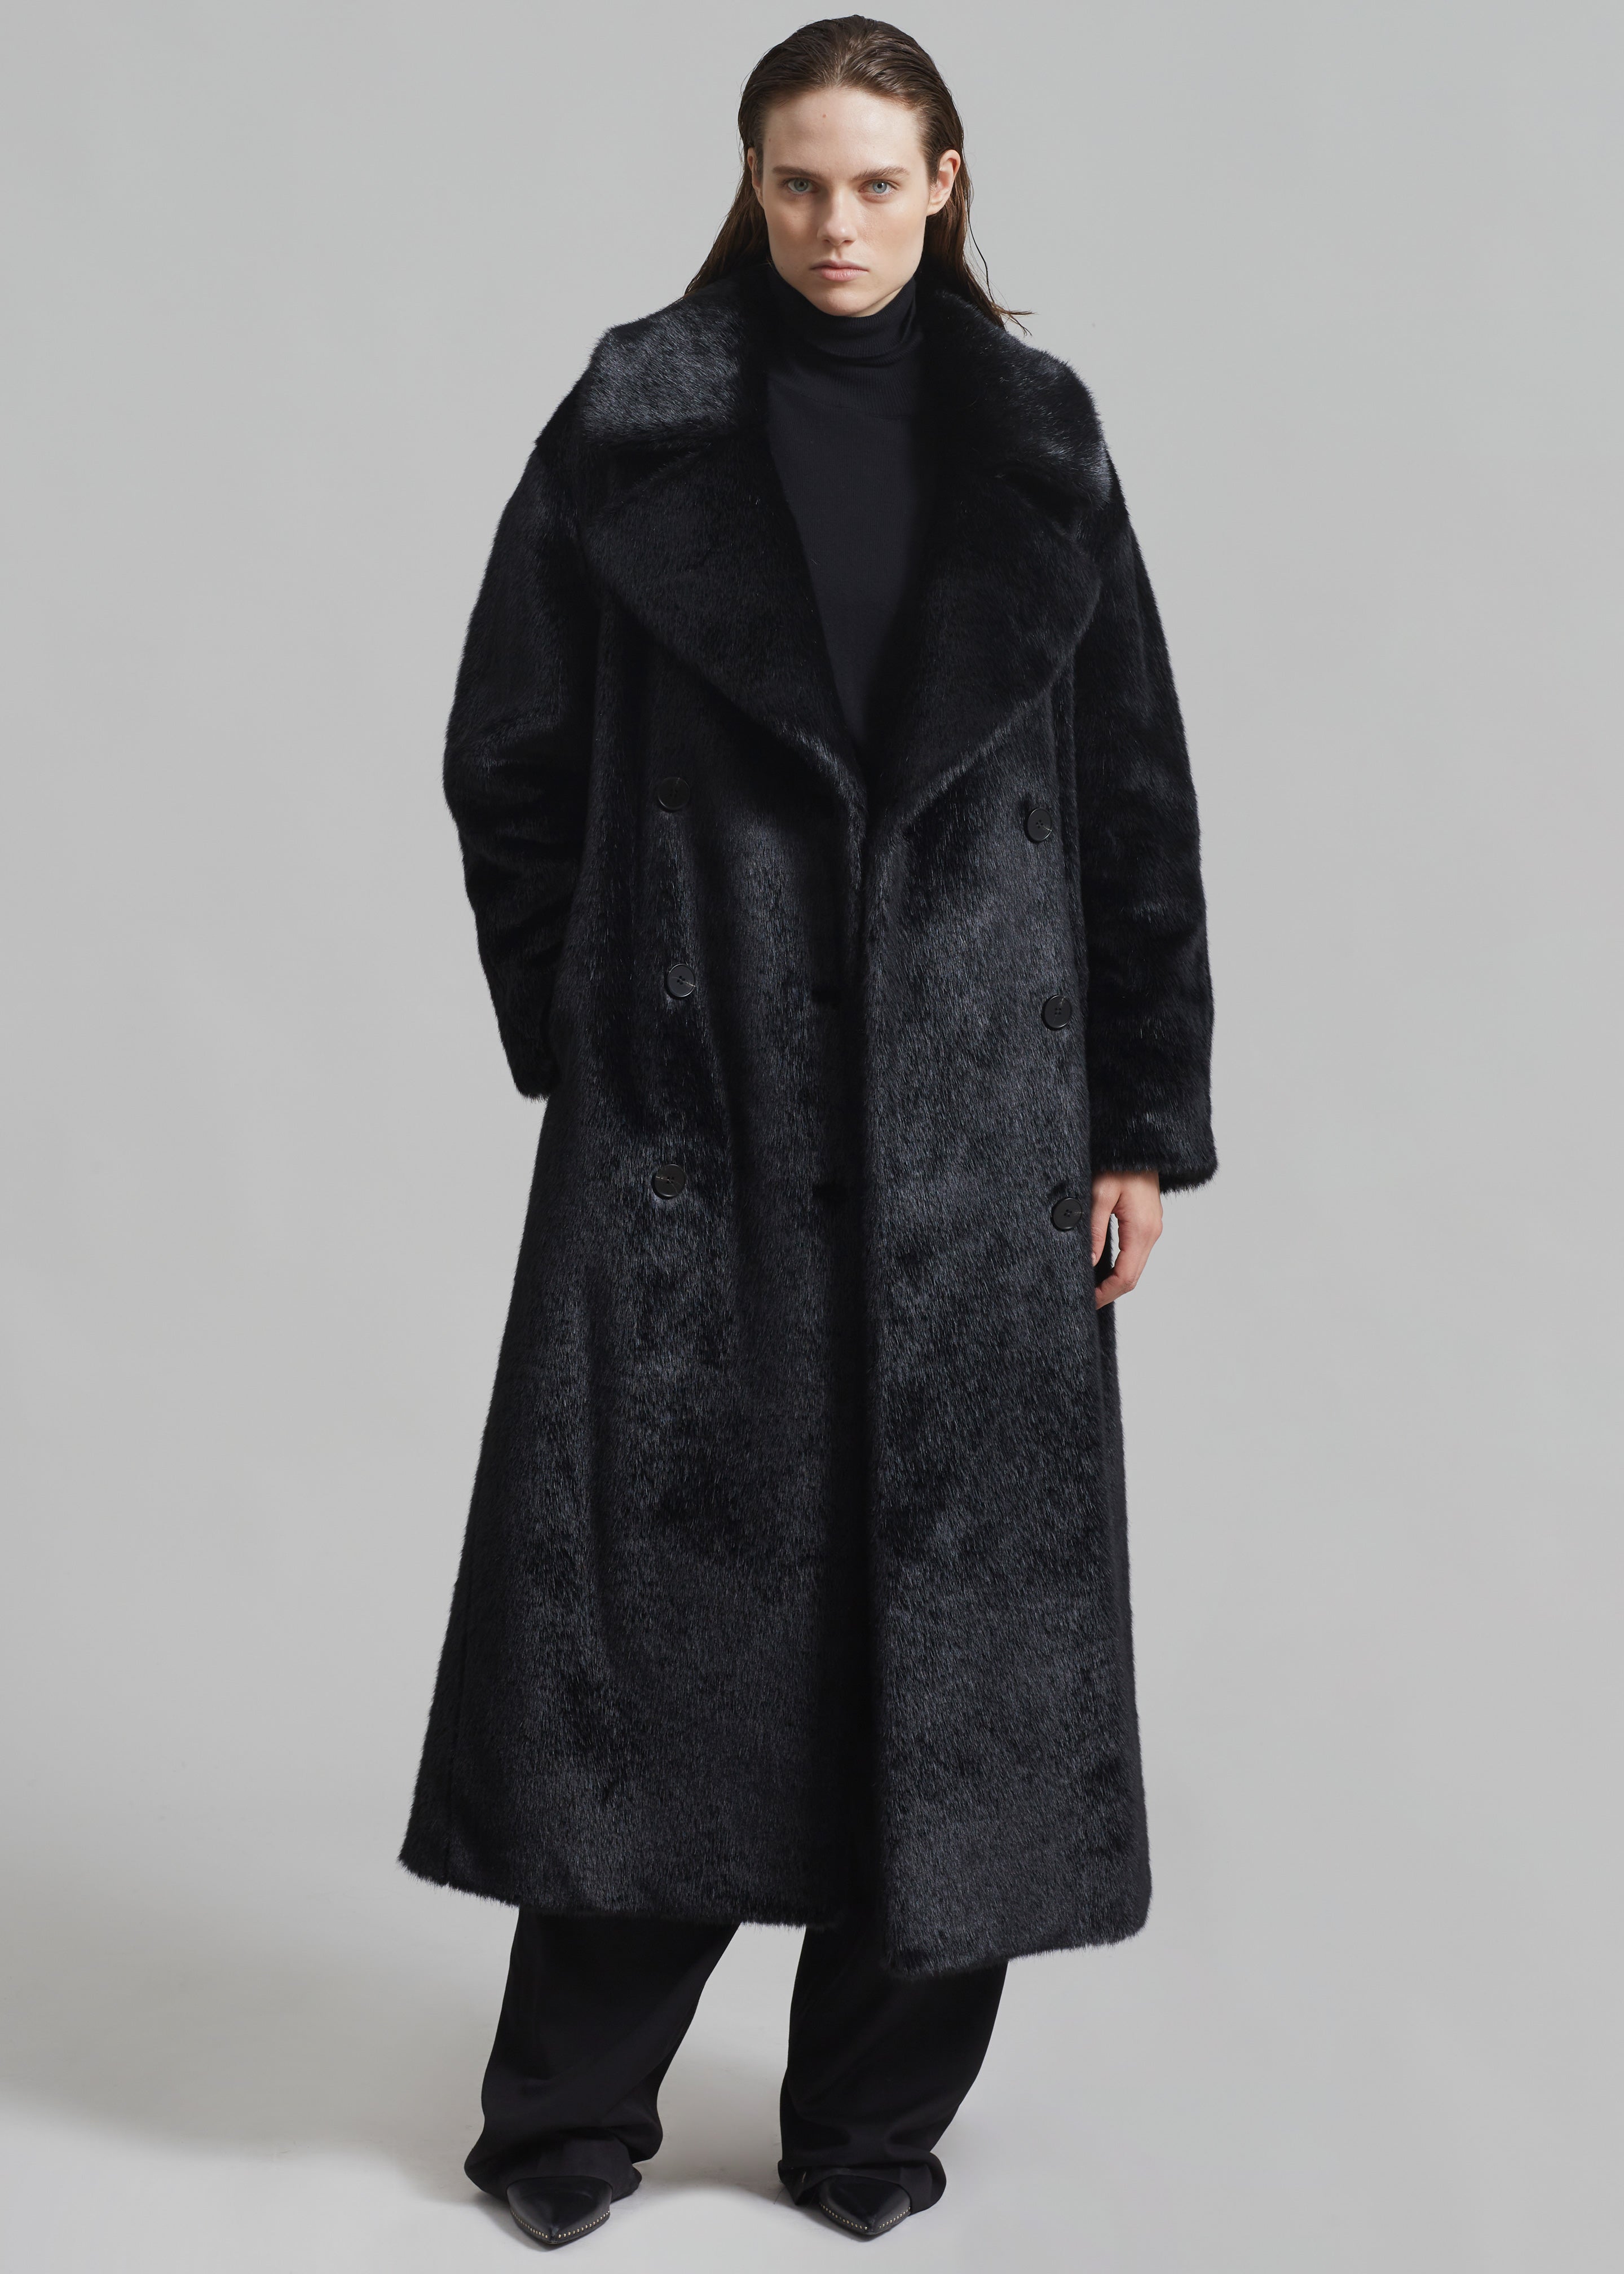 Joni Faux Fur Coat - Black - 3